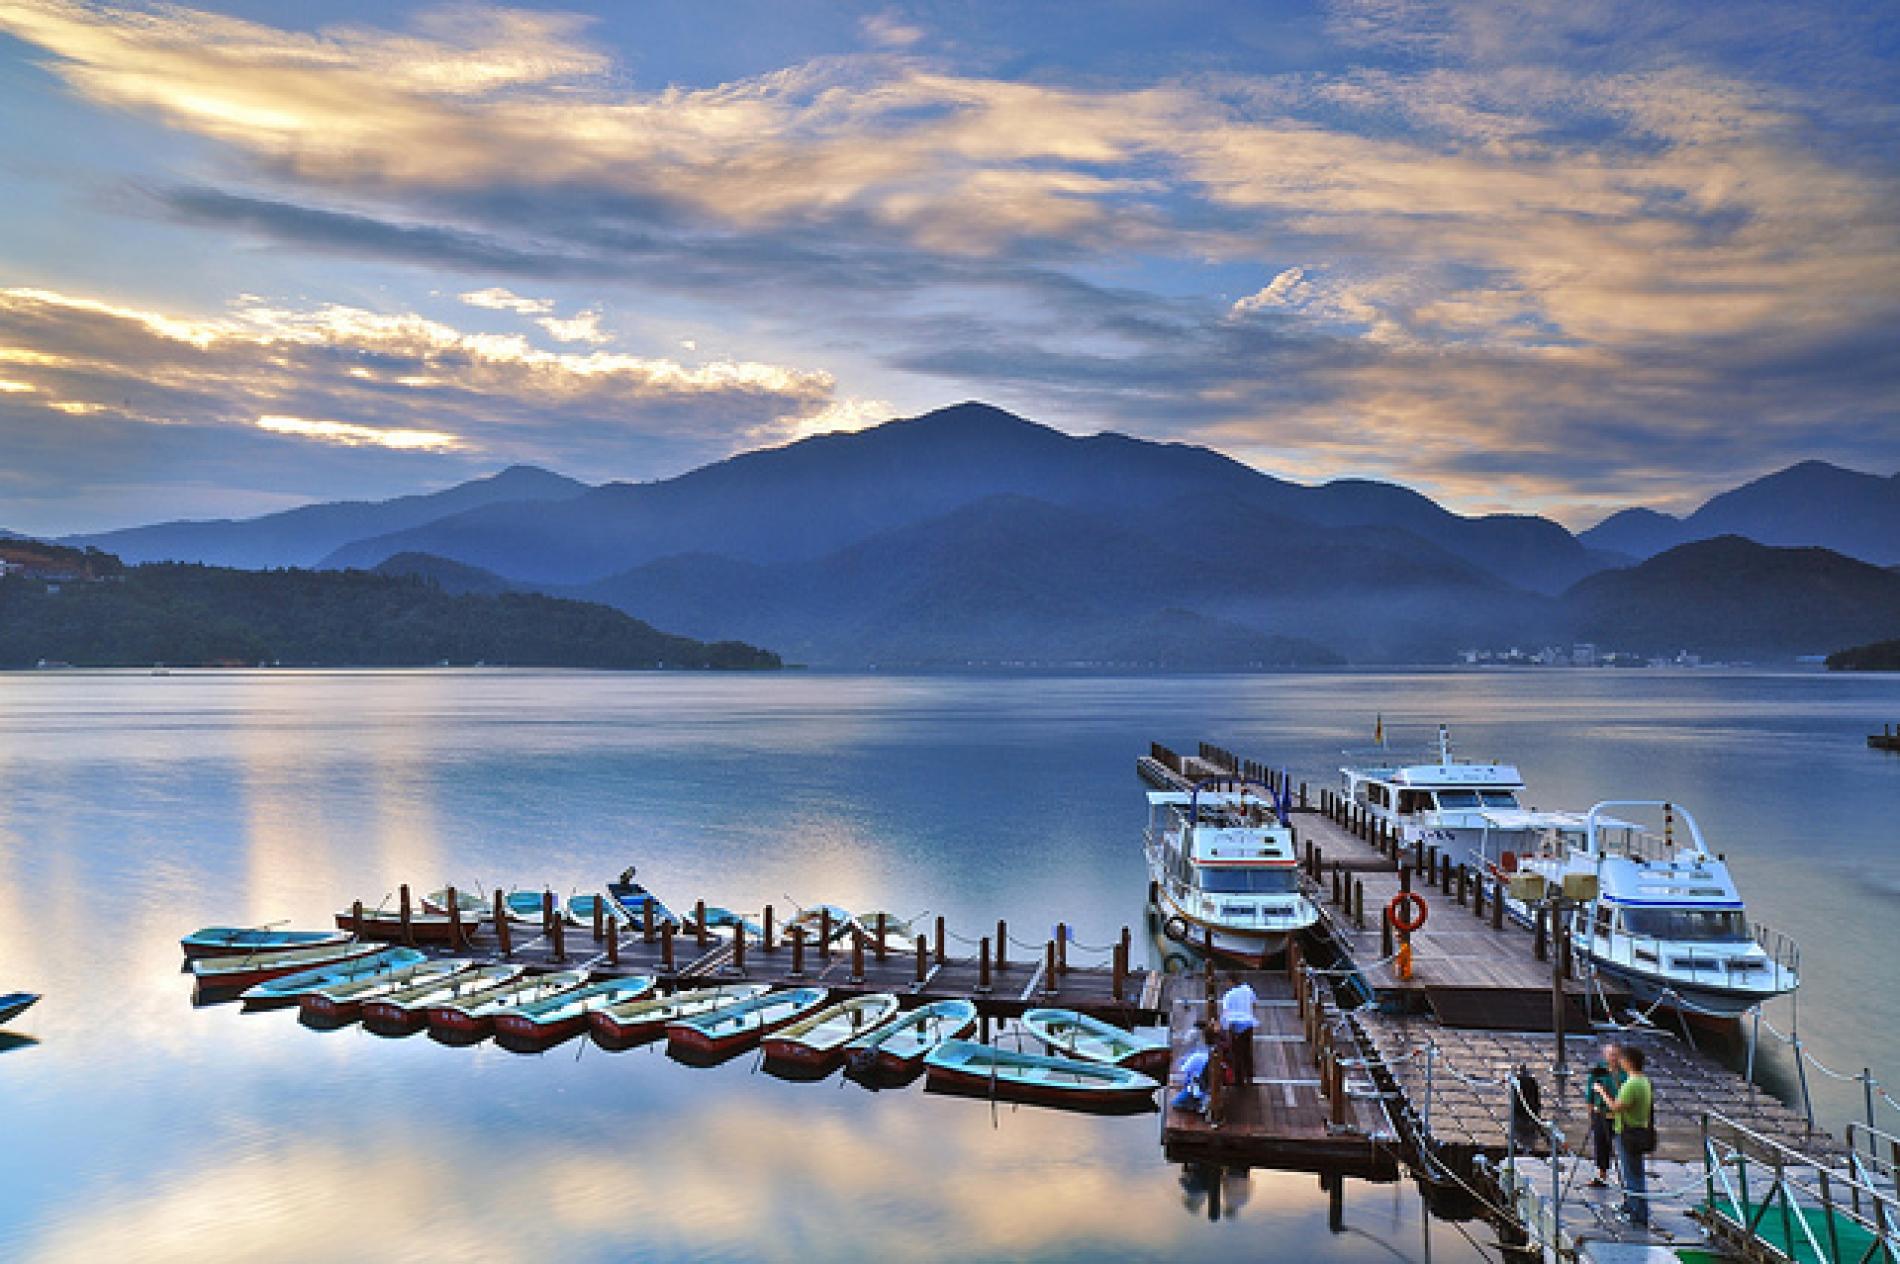 Tour một ngày Hồ Nhật Nguyệt ở Nam Đầu｜Bao gồm Cáp treo Hồ Nhật Nguyệt, Du  thuyền & Đạp xe quanh hồ｜Khởi hành từ Đài Trung｜Giảm thêm 25% cho vé tàu cao